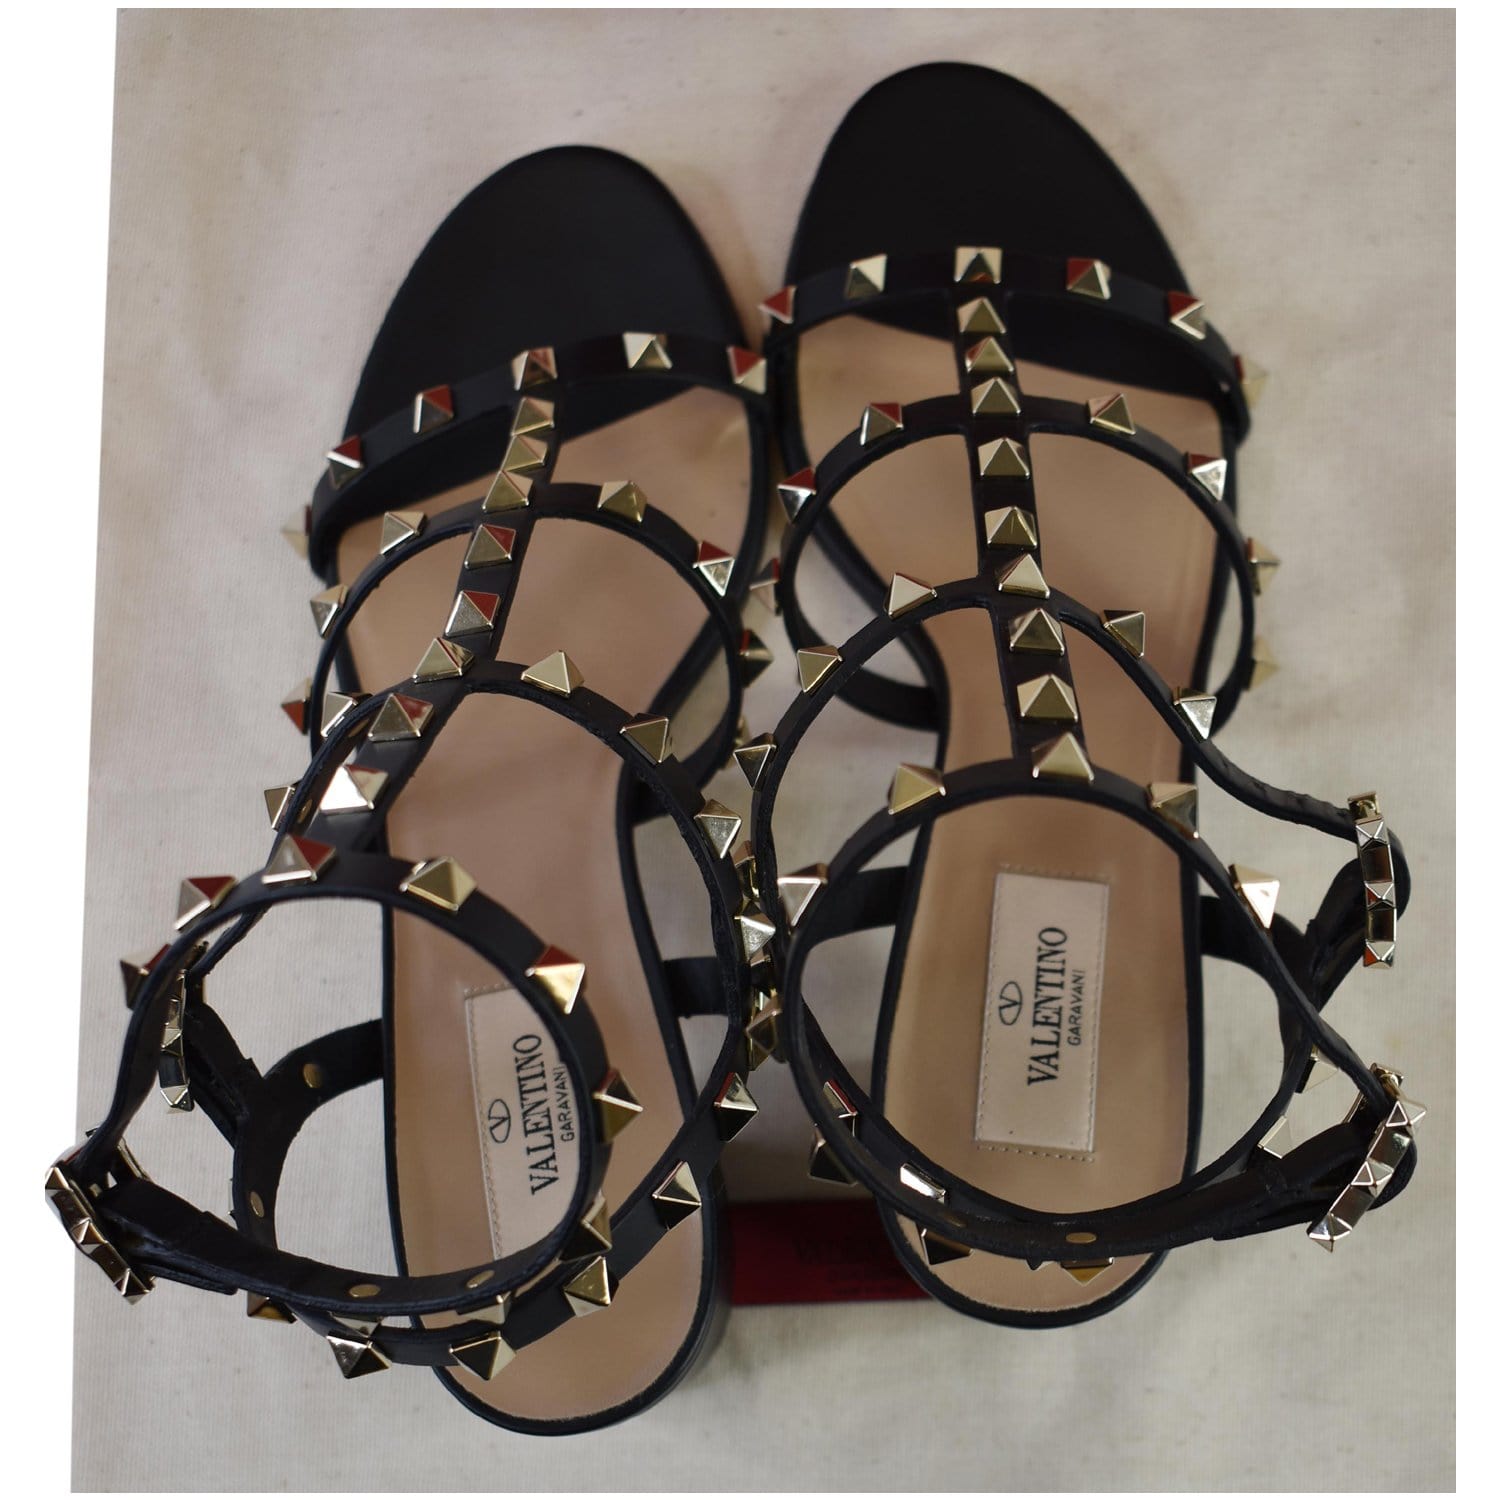 Sandals Designer By Louis Vuitton Size: 9.5